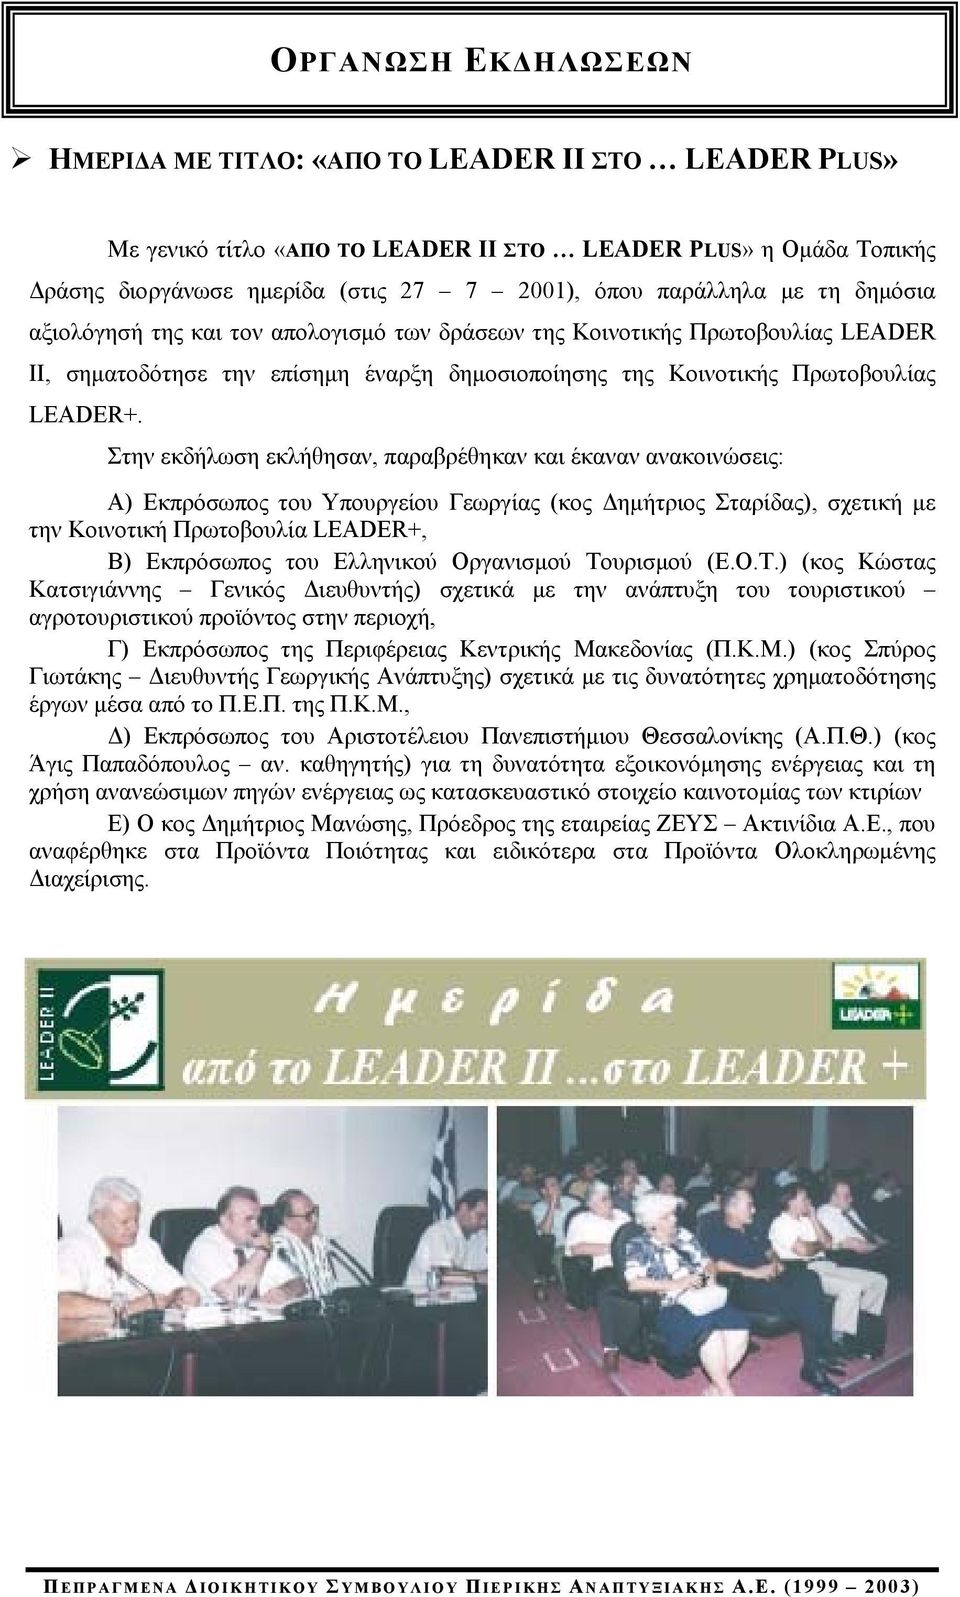 Στην εκδήλωση εκλήθησαν, παραβρέθηκαν και έκαναν ανακοινώσεις: Α) Εκπρόσωπος του Υπουργείου Γεωργίας (κος Δημήτριος Σταρίδας), σχετική με την Κοινοτική Πρωτοβουλία LEADER+, Β) Εκπρόσωπος του